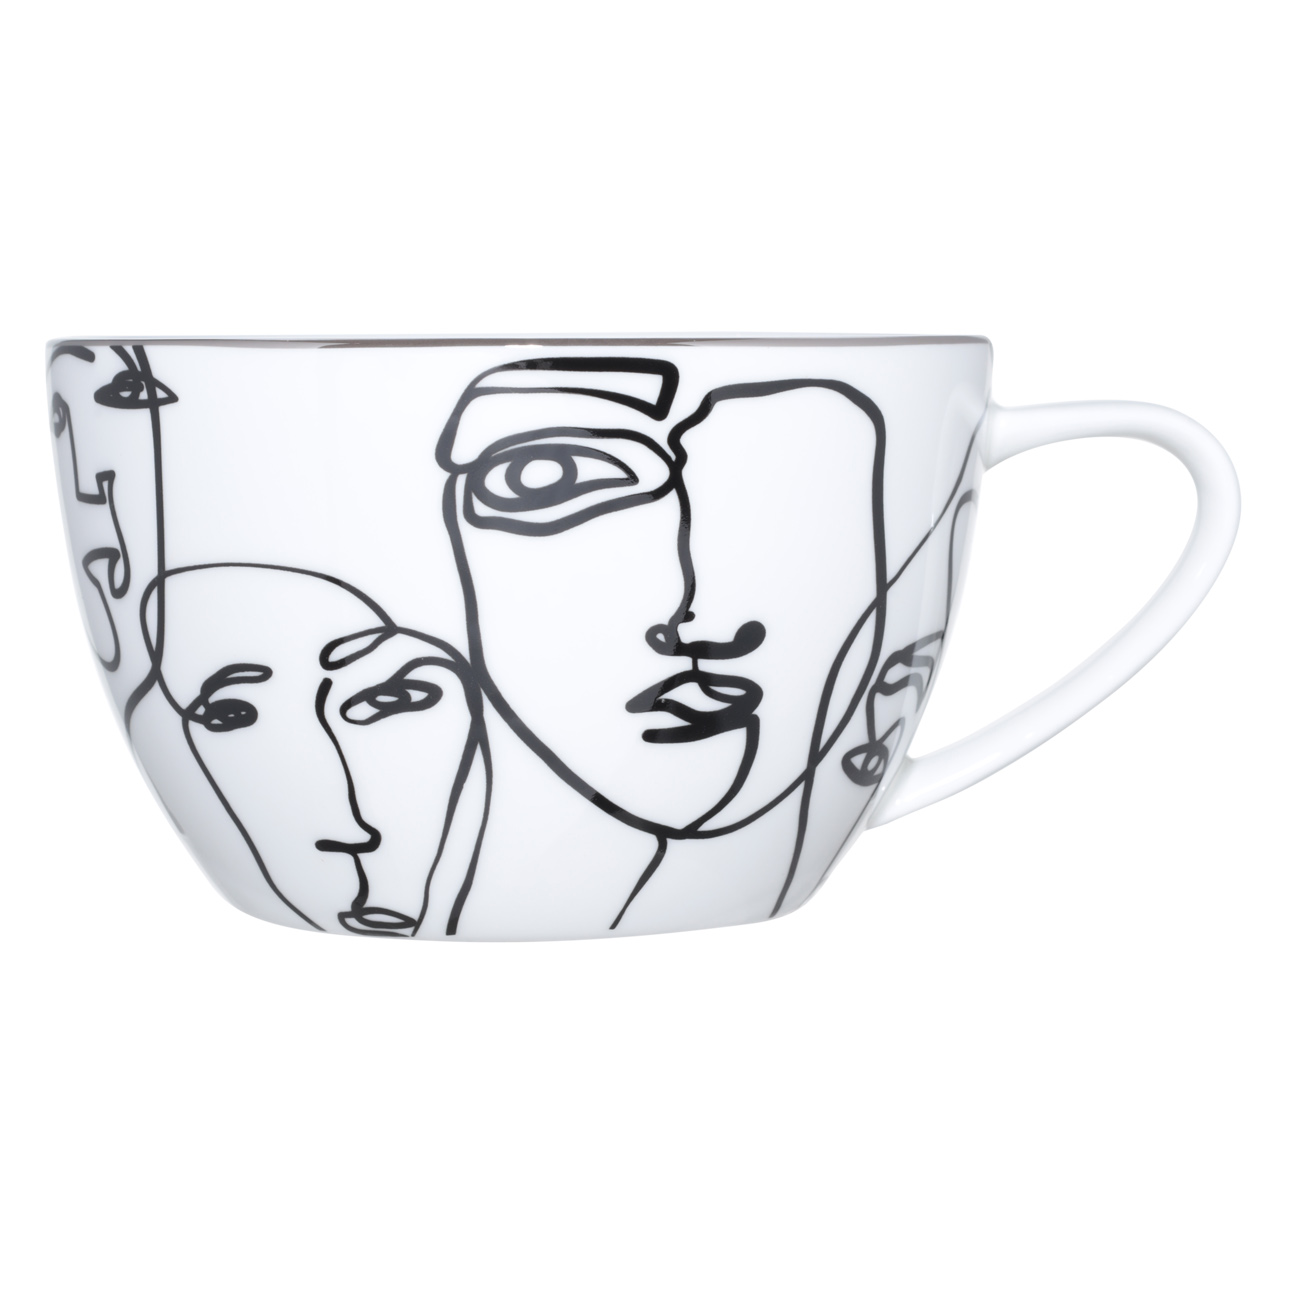 Пара чайная для завтрака, 1 перс, 2 пр, 480 мл, фарфор F, белая, Контурные лица, Face изображение № 2